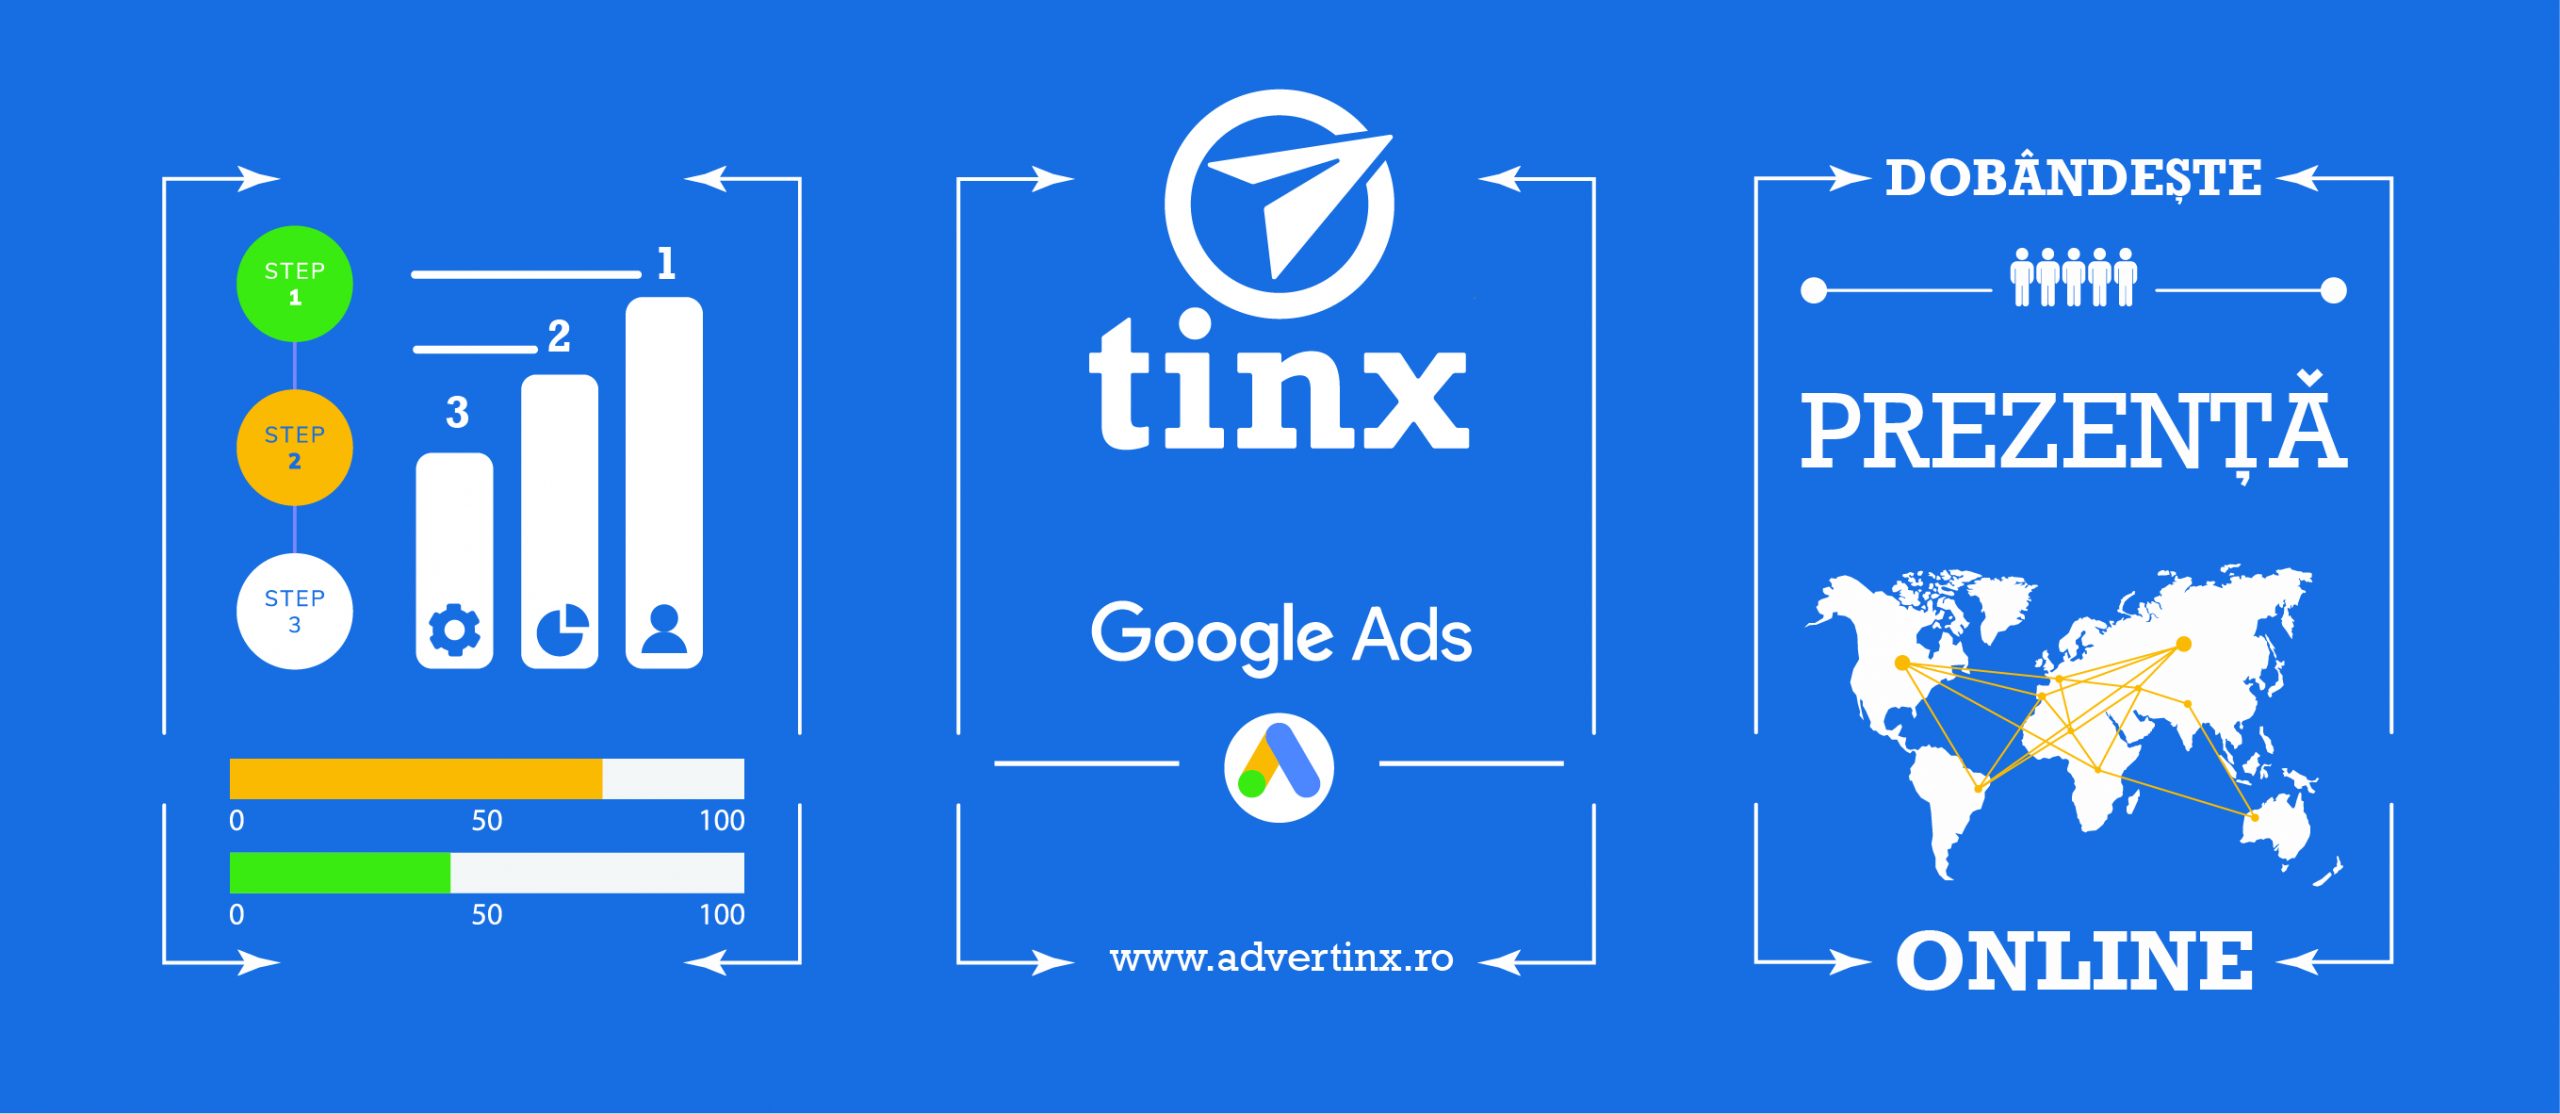 Tinx Advertinx